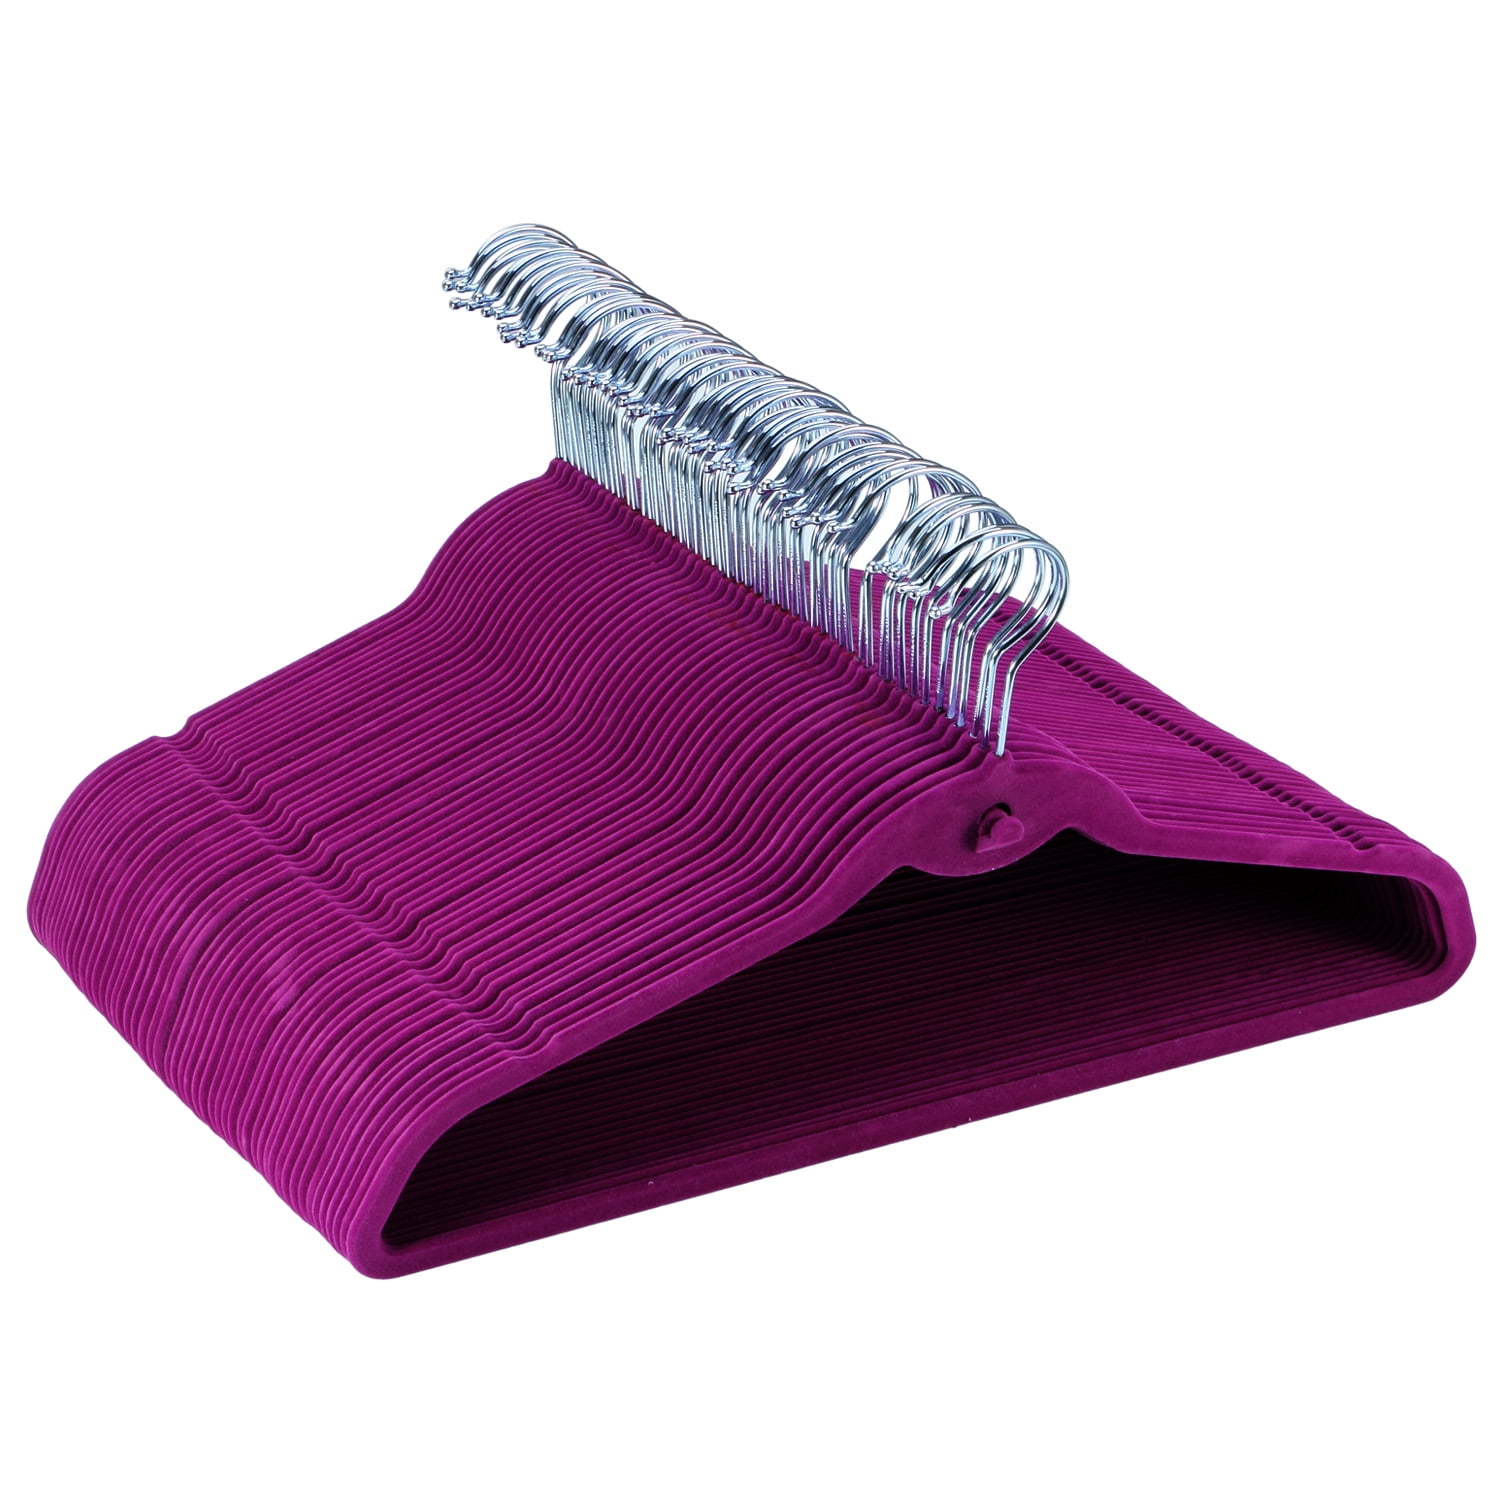 50pk Waverly Teal Velvet Hangers Non-Slip – Slim Profile, Maximize Clo